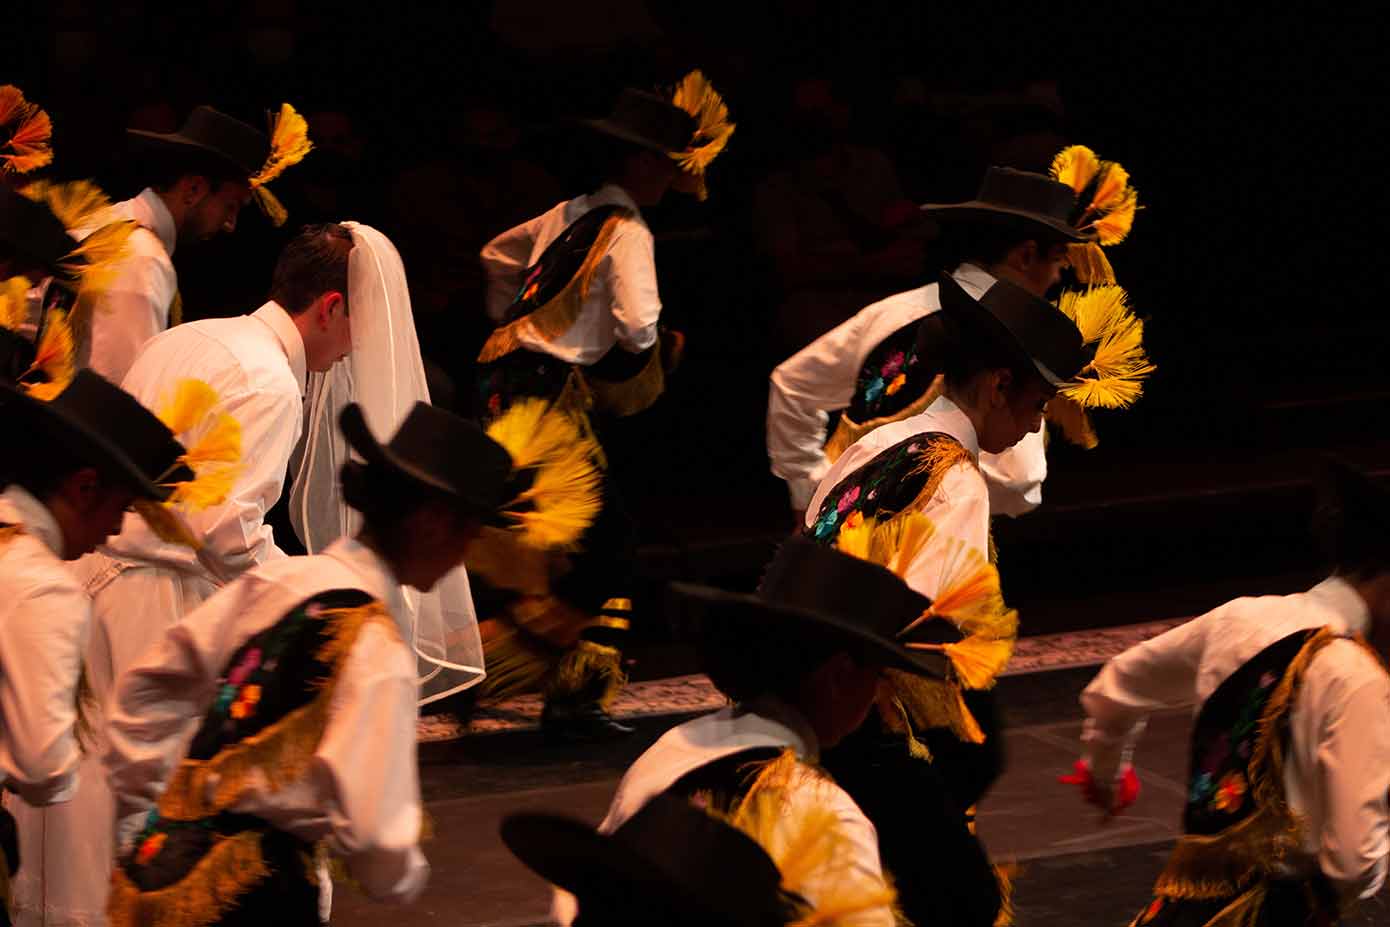 Estampas de México, grupo de baile folclórico del Tec Guadalajara, presentó el espectáculo "Qué Chula es Puebla".